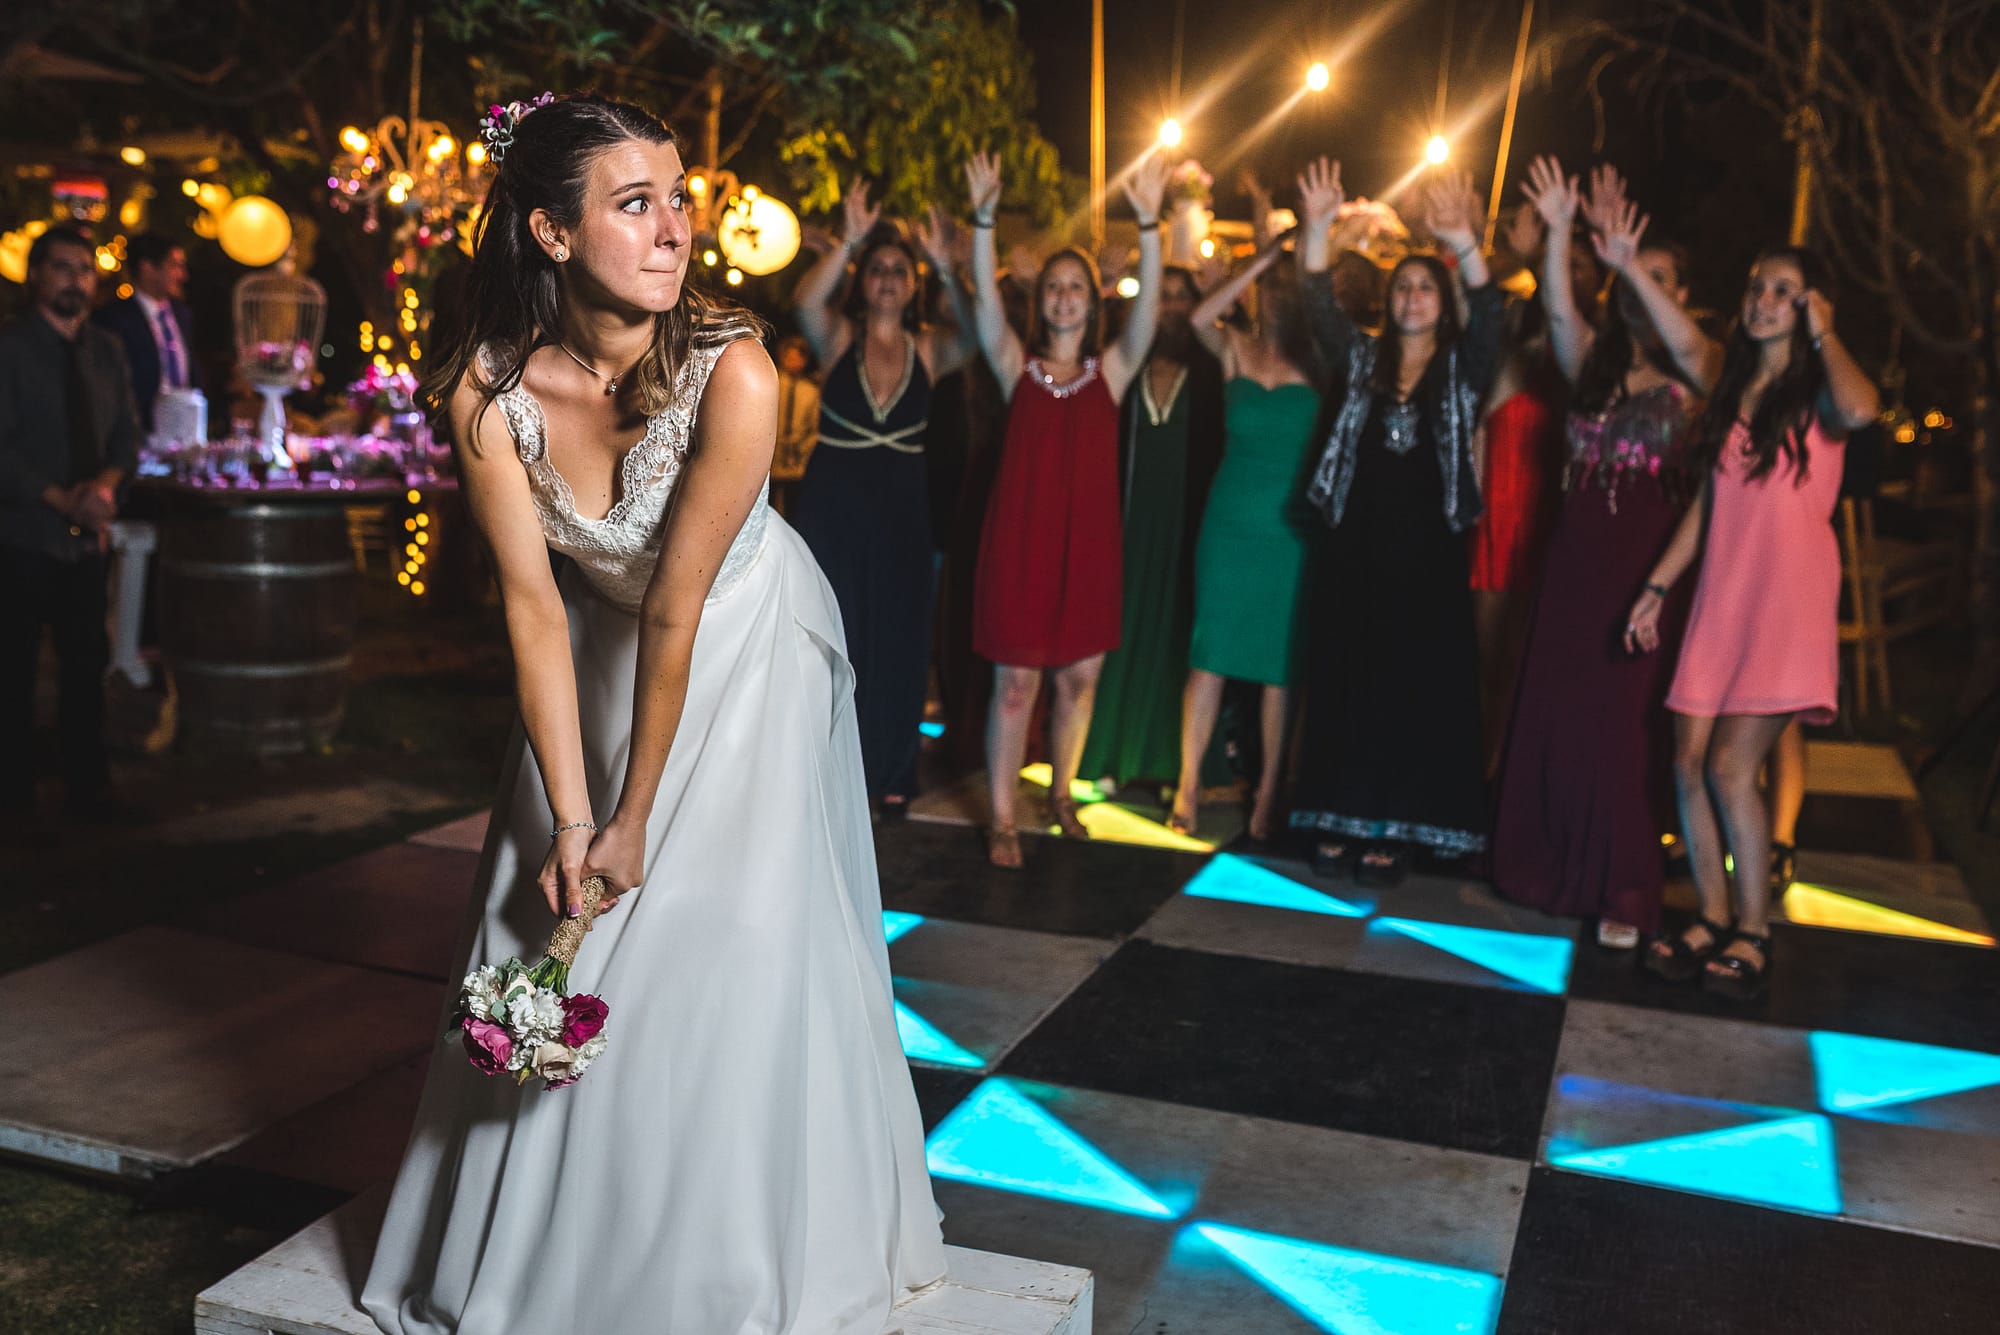 fotografo documental de matrimonios-fotografo matrimonio santiago-fiesta-lanzamiento ramo